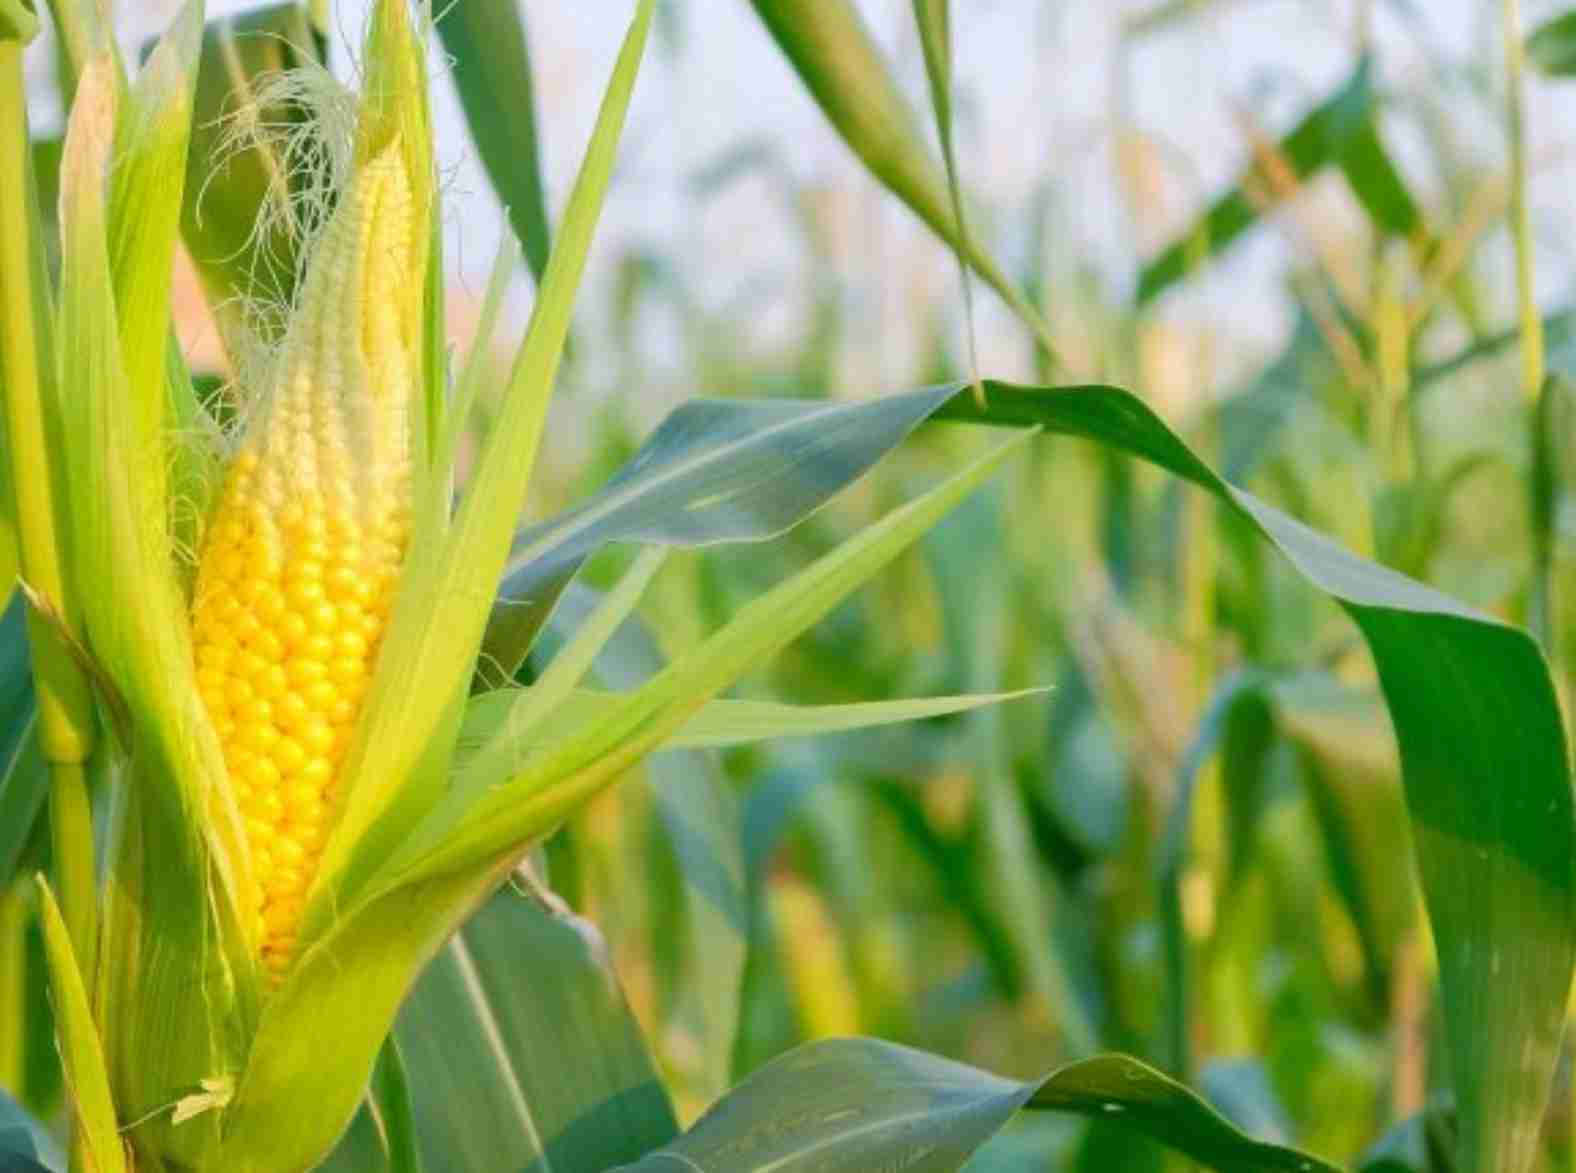 Desafios do setor agrícola: Queda acentuada nos preços do milho revela tendências e preocupações